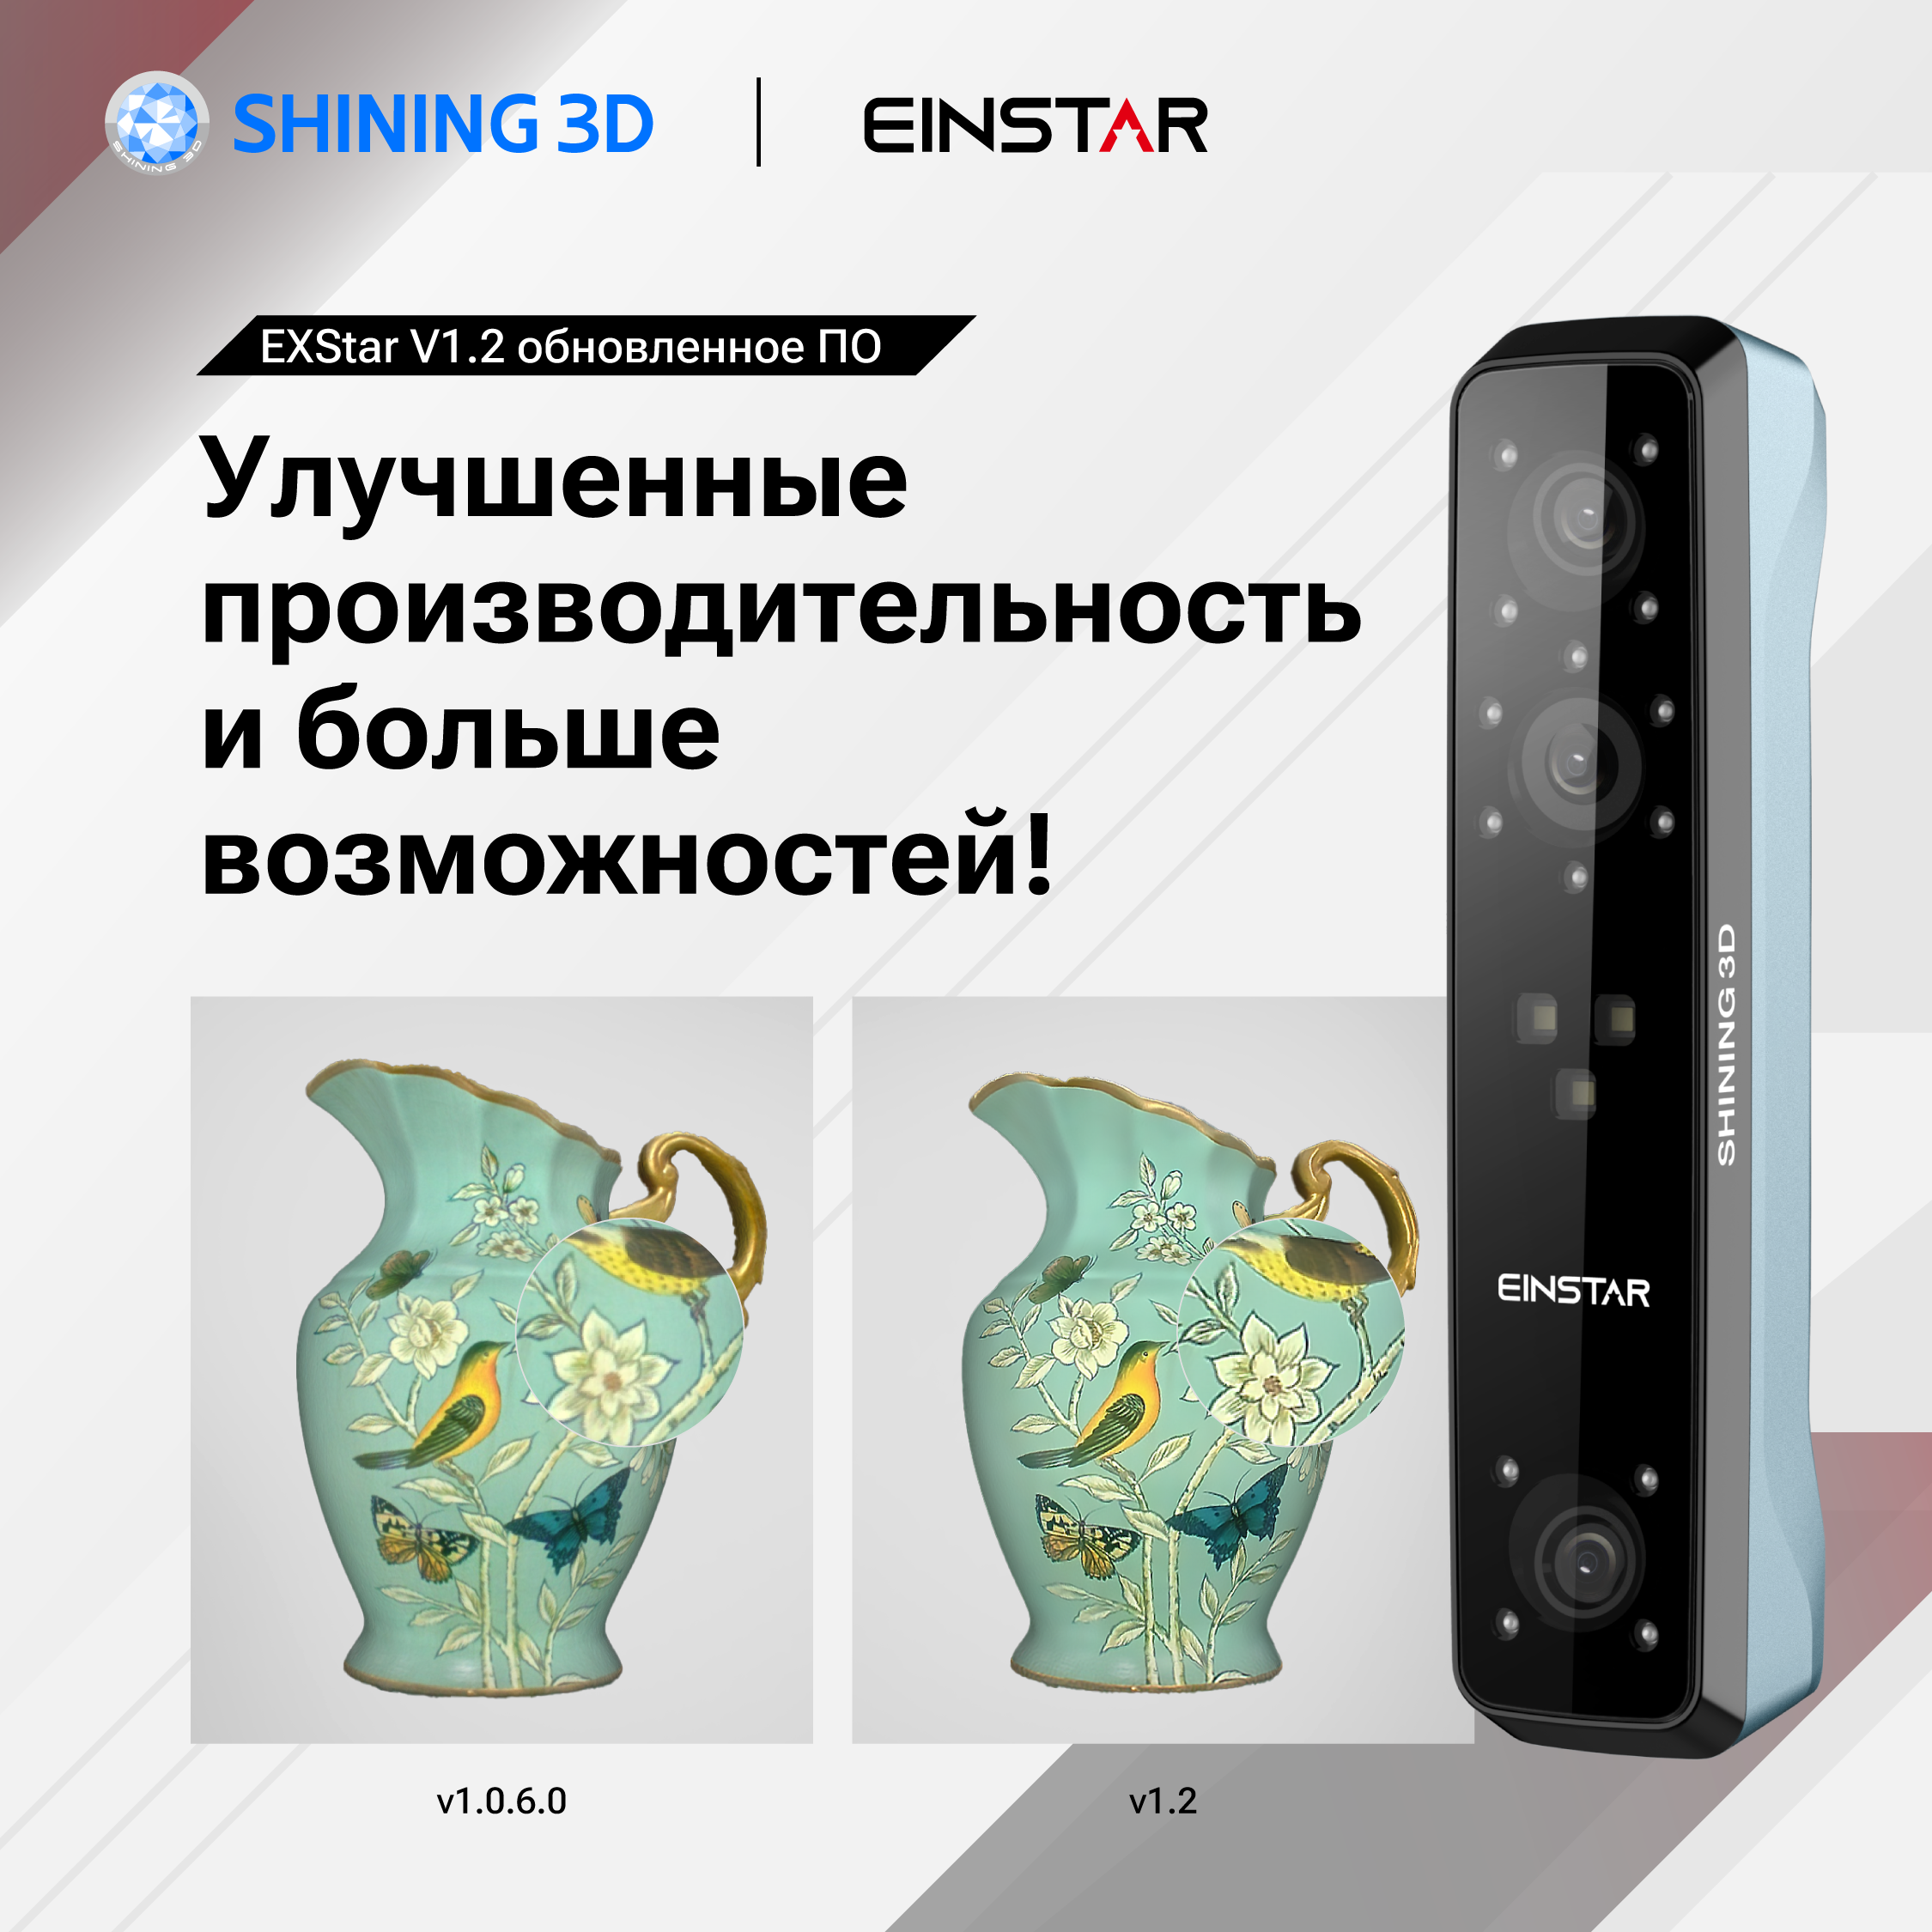 EinstarV1.2 ru